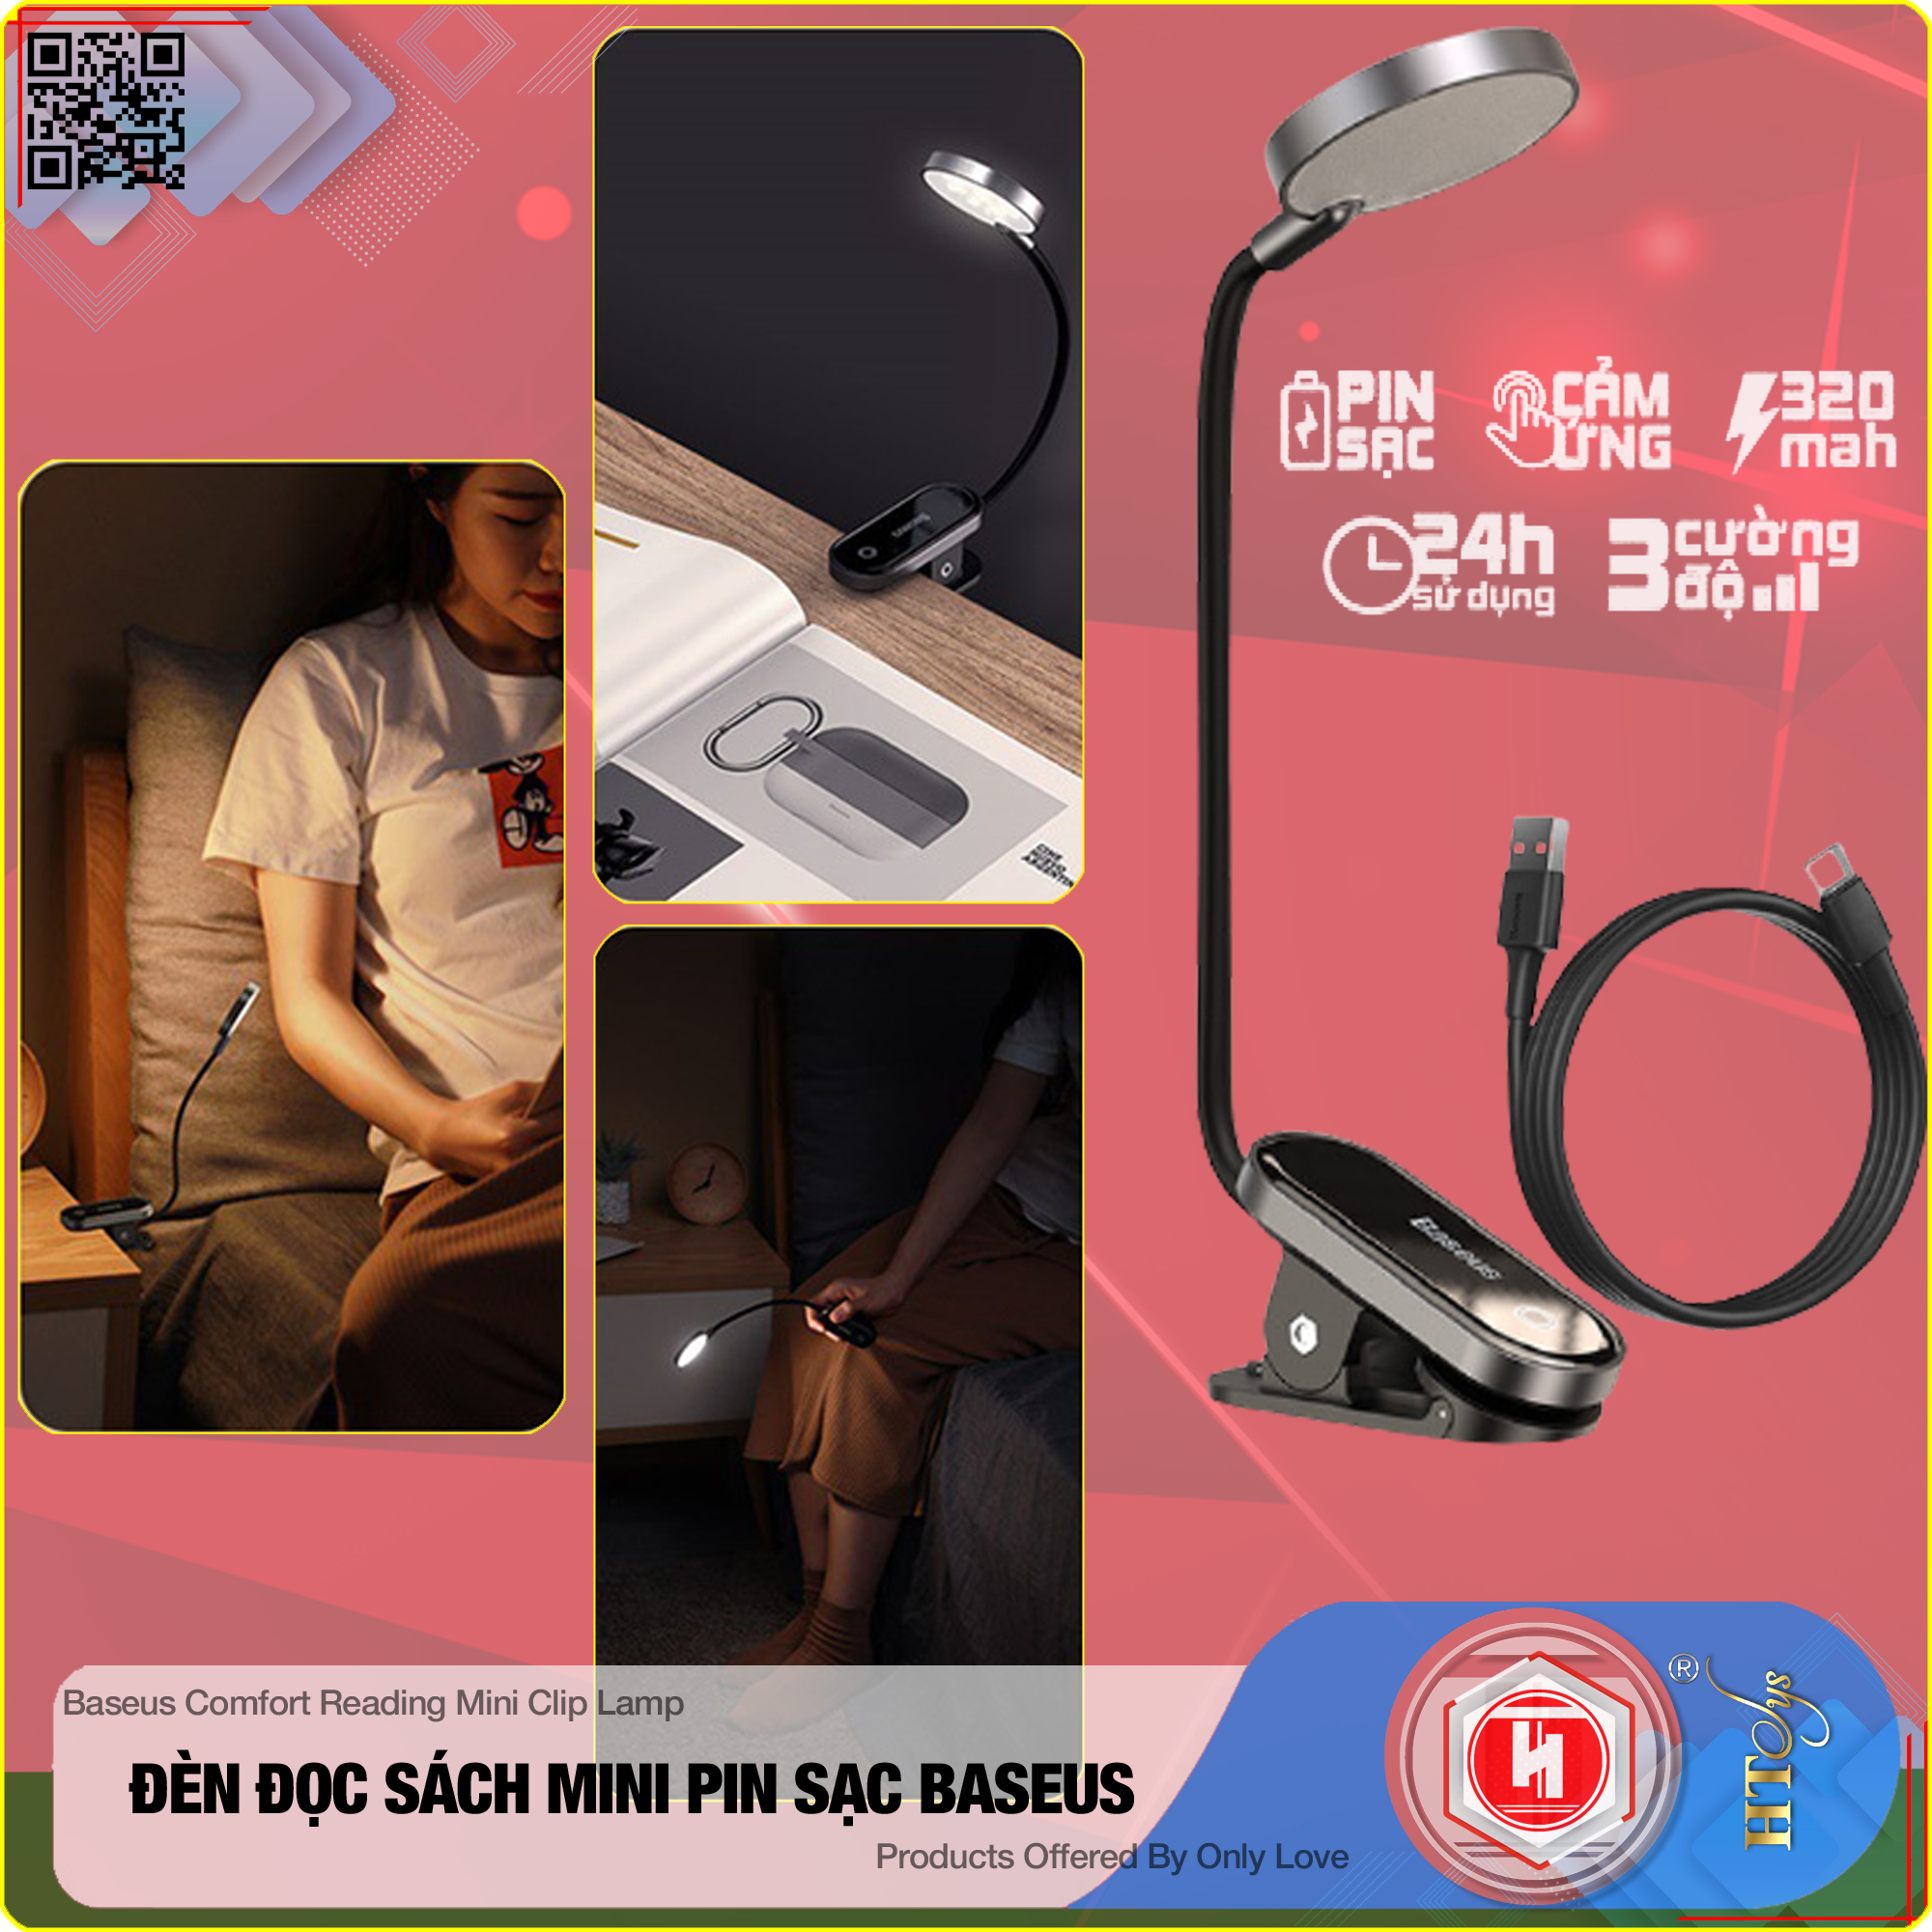 Đèn đọc sách mini Baseus Comfort Reading Mini Clip Lamp - Pin sạc 350mAh - Chân đế kẹp - 03 Cường độ sáng - 24H sử dụng - Hàng Nhập Khẩu